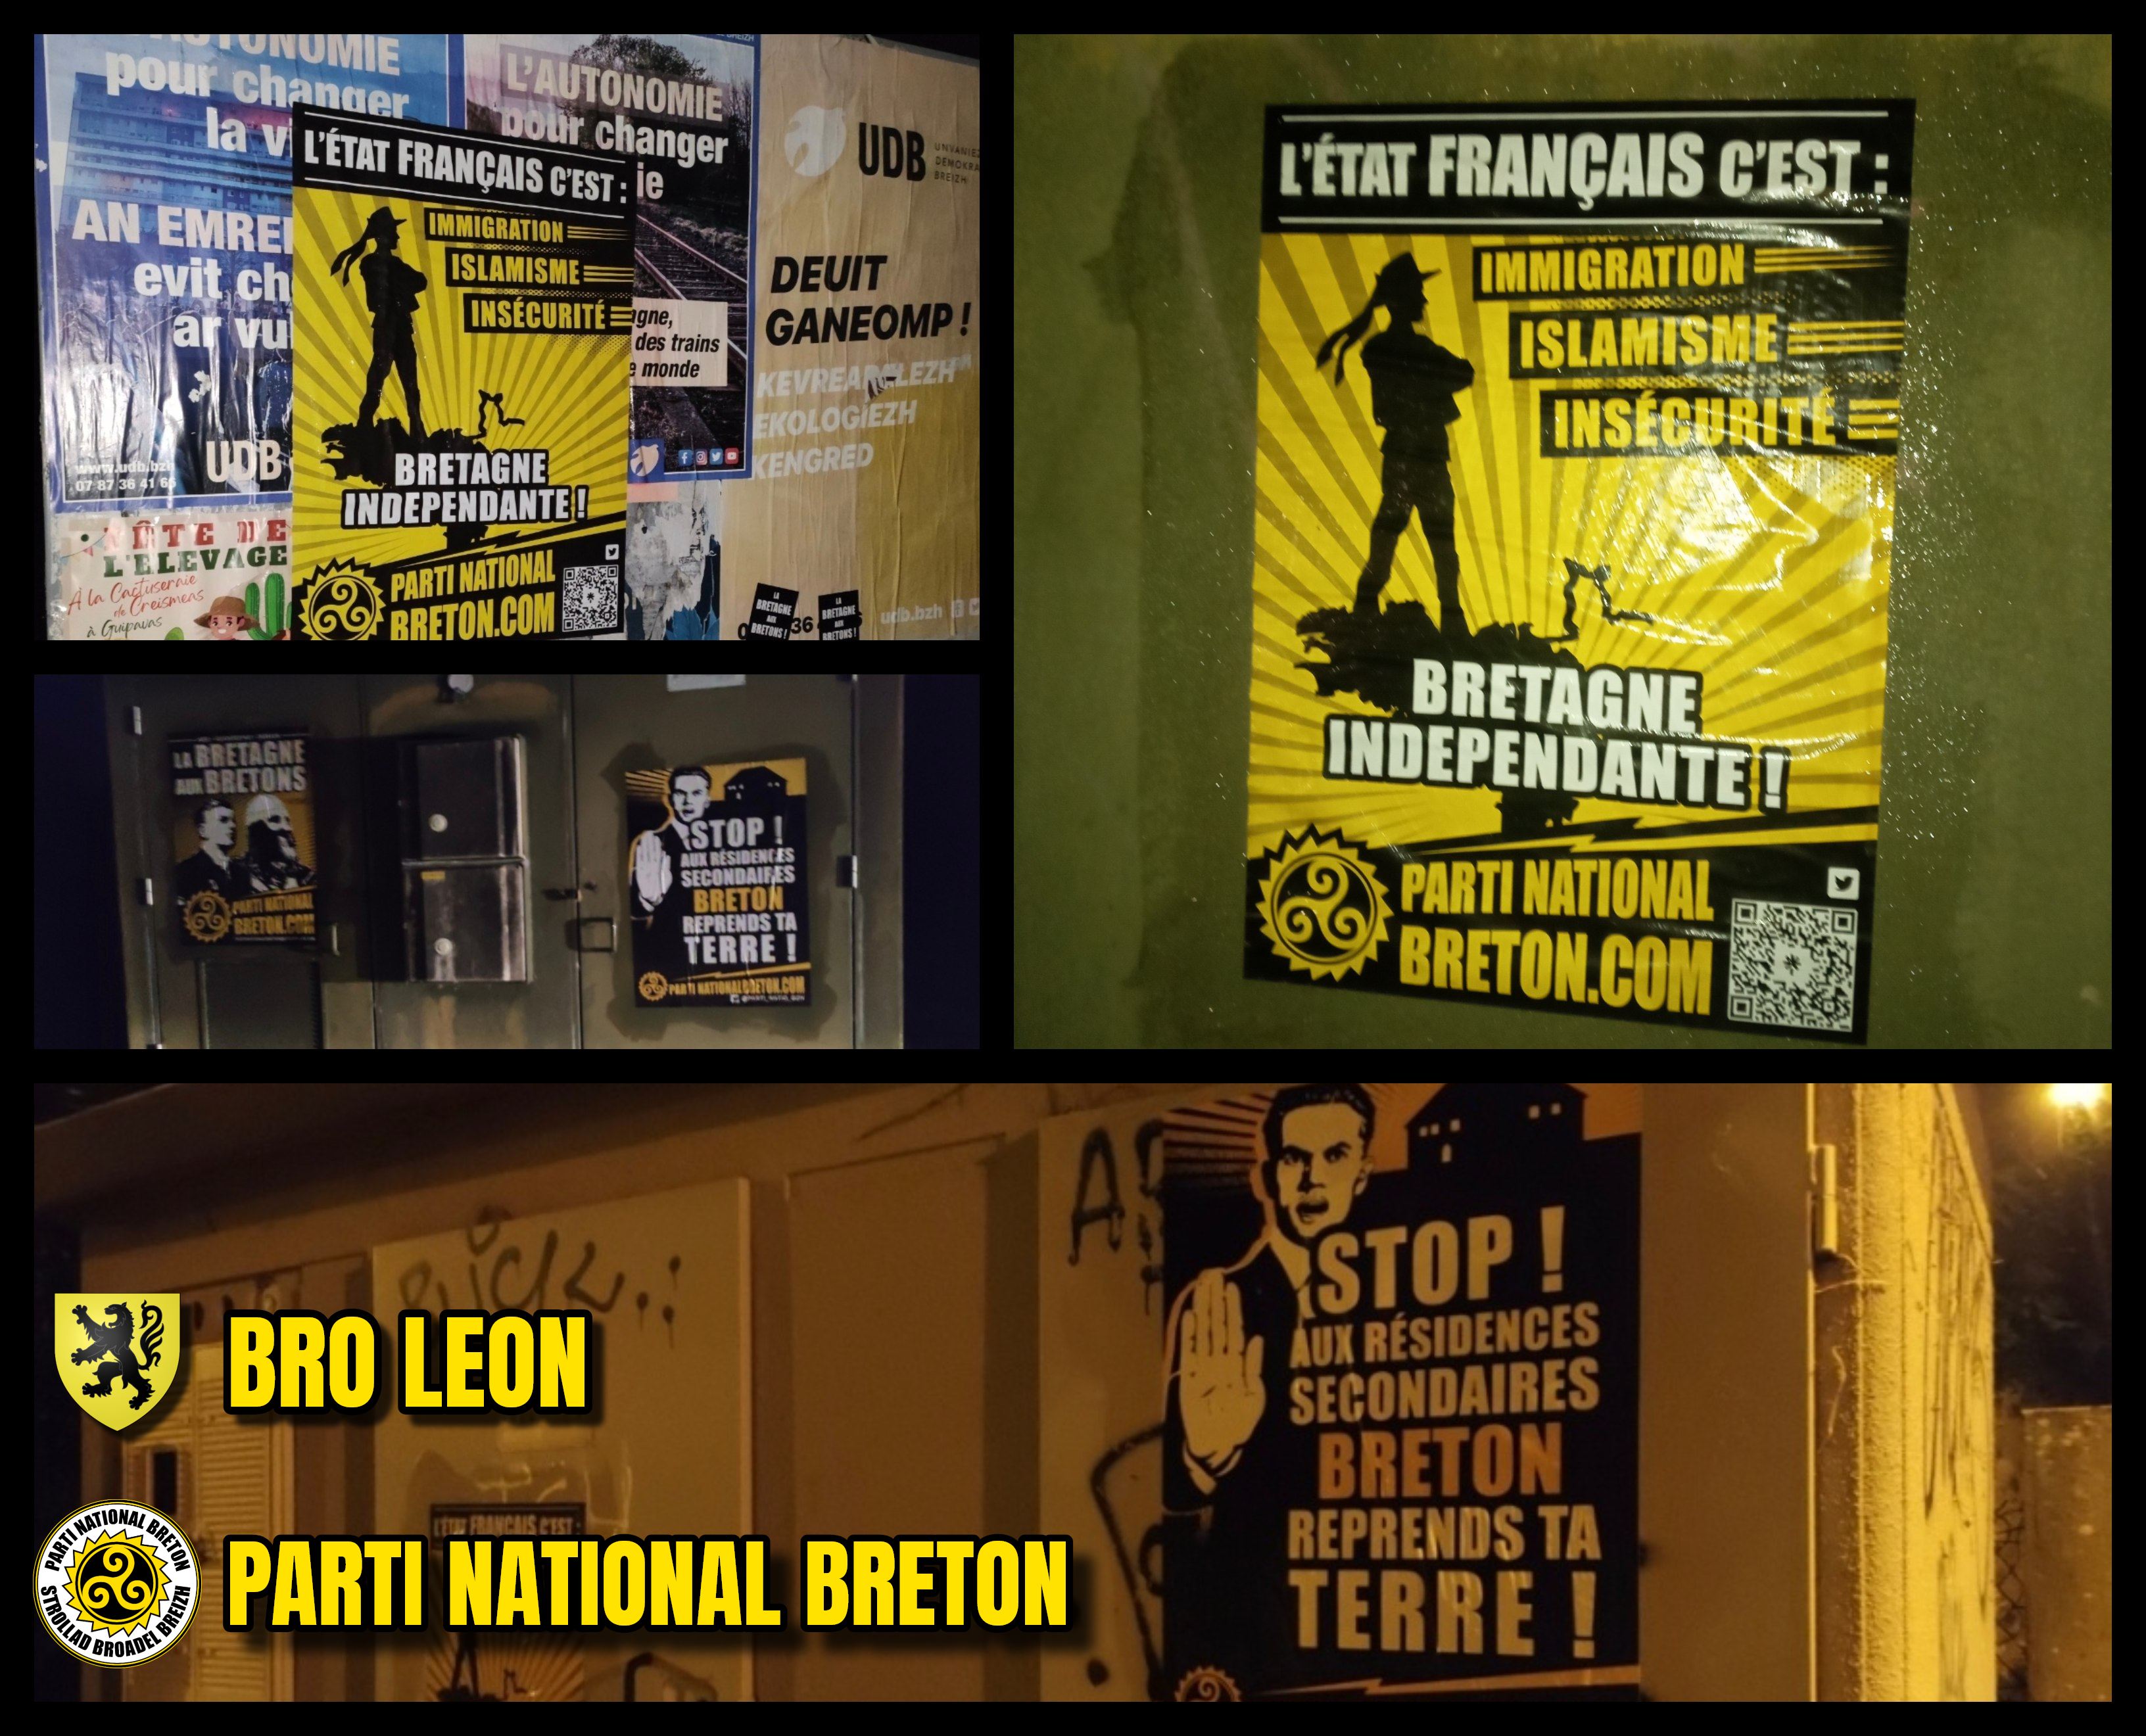 Action d’affirmation nationale bretonne dans le Pays du Léon !